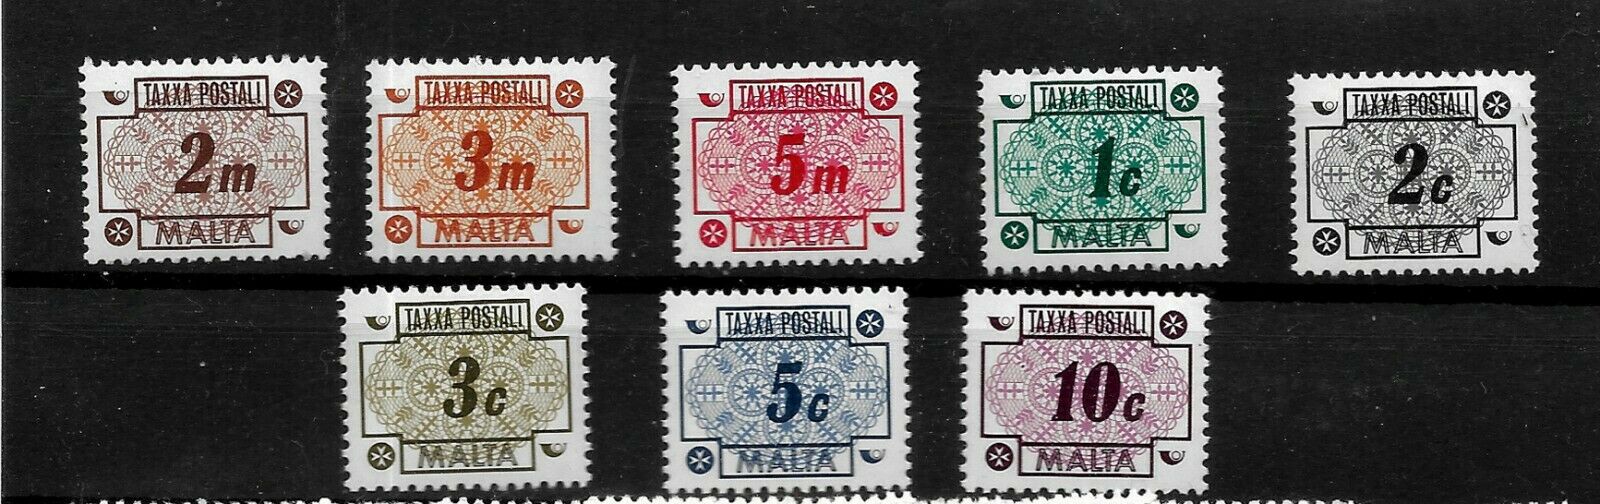 Malta 1973 - Porto, serie neuzata